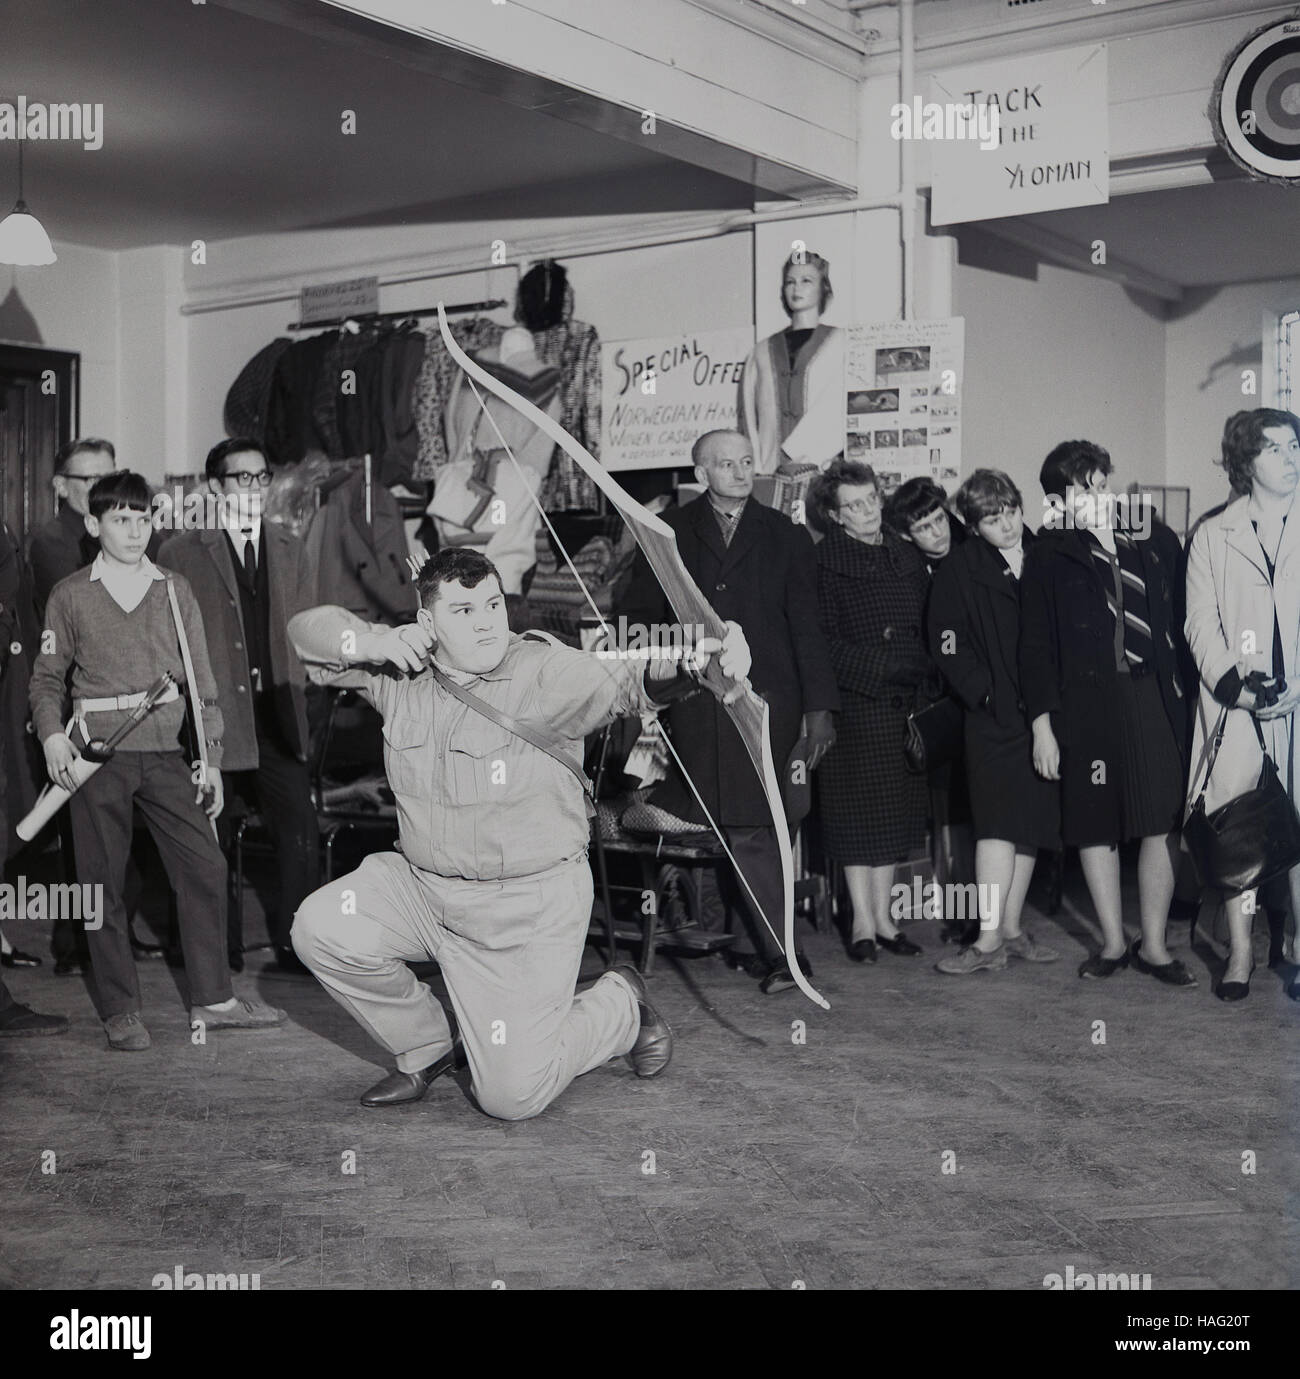 1960er Jahre, eine Demonstration von einer männlichen Archer mit einem Bogen & Pfeil in einem Geschäft das Bogenschießen Produkte von "Jack The Yeoman" entwickelt, England, Großbritannien zu fördern. Stockfoto